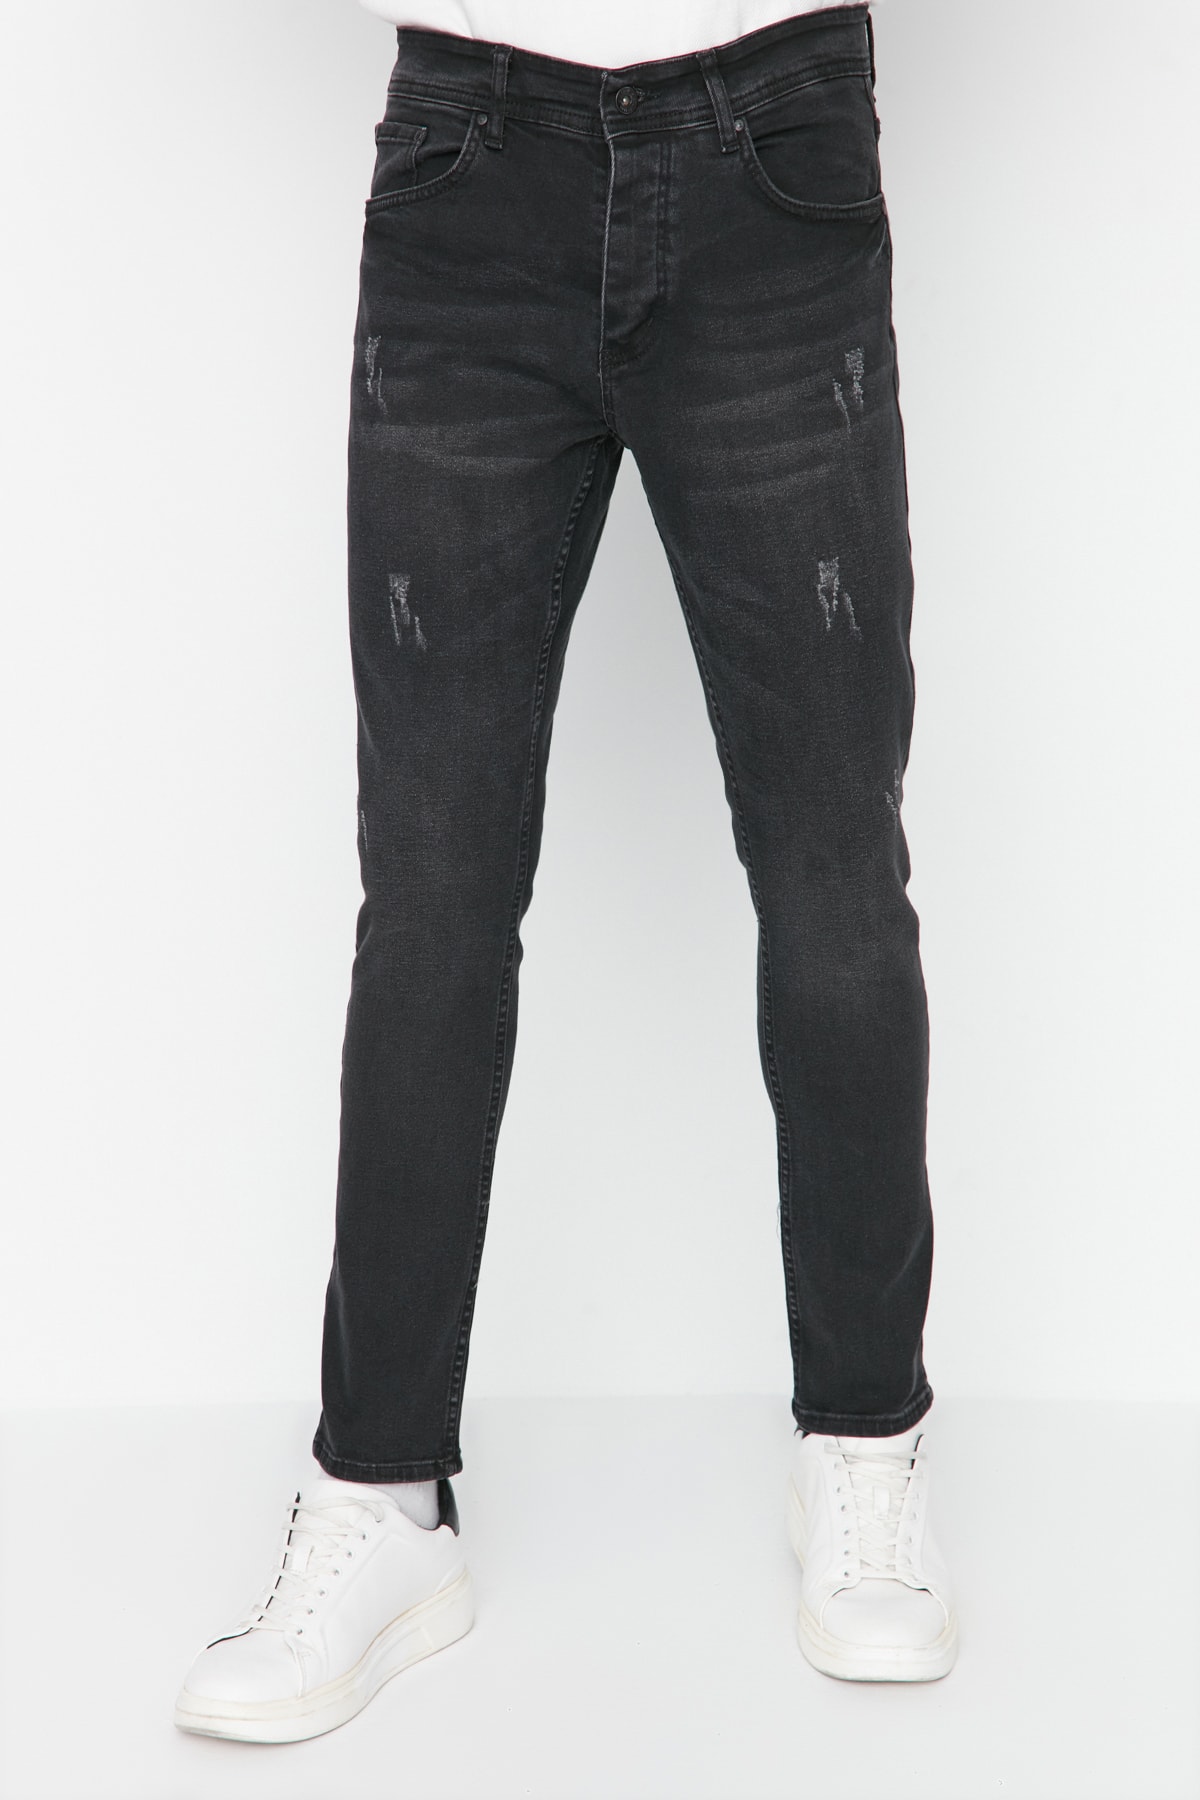 Джинсы Trendyol скинни с потертостями, черный джинсы скинни uniqlo размер 28 черный